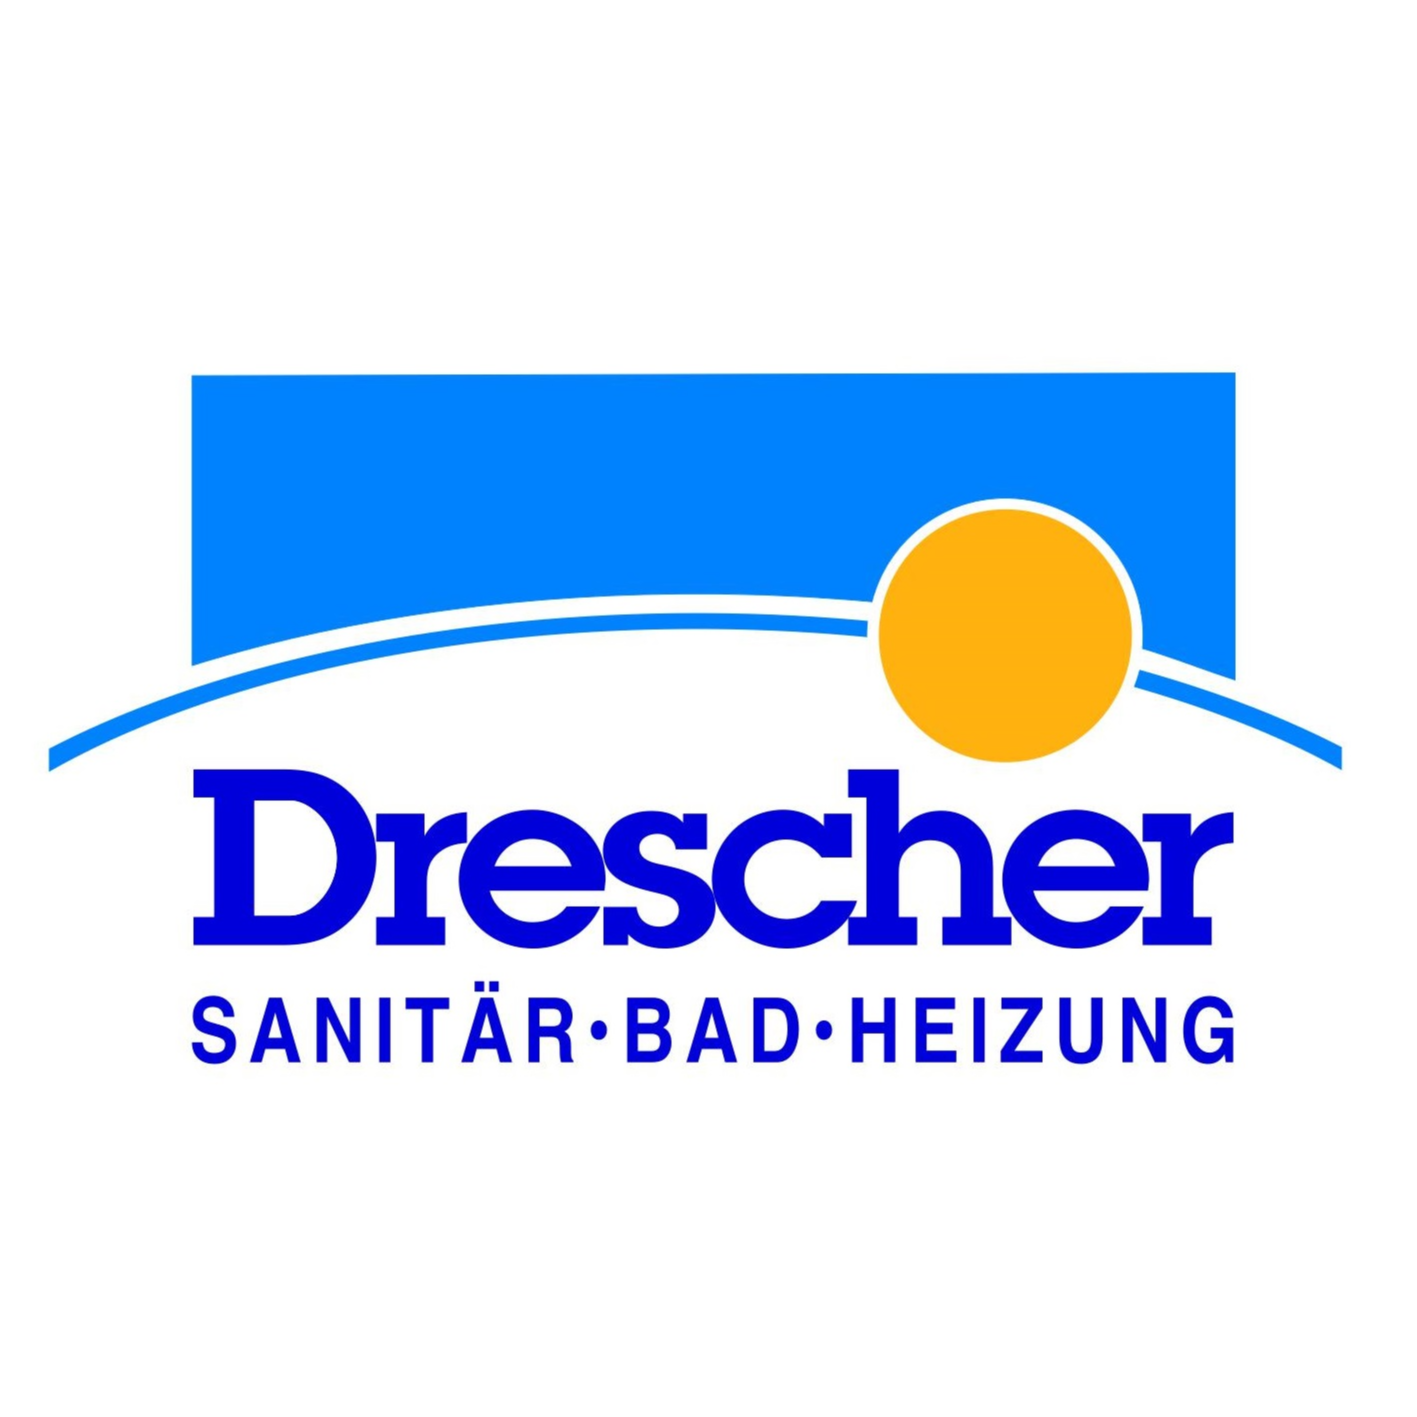 Drescher GmbH Heizung - Sanitär - Bad Logo